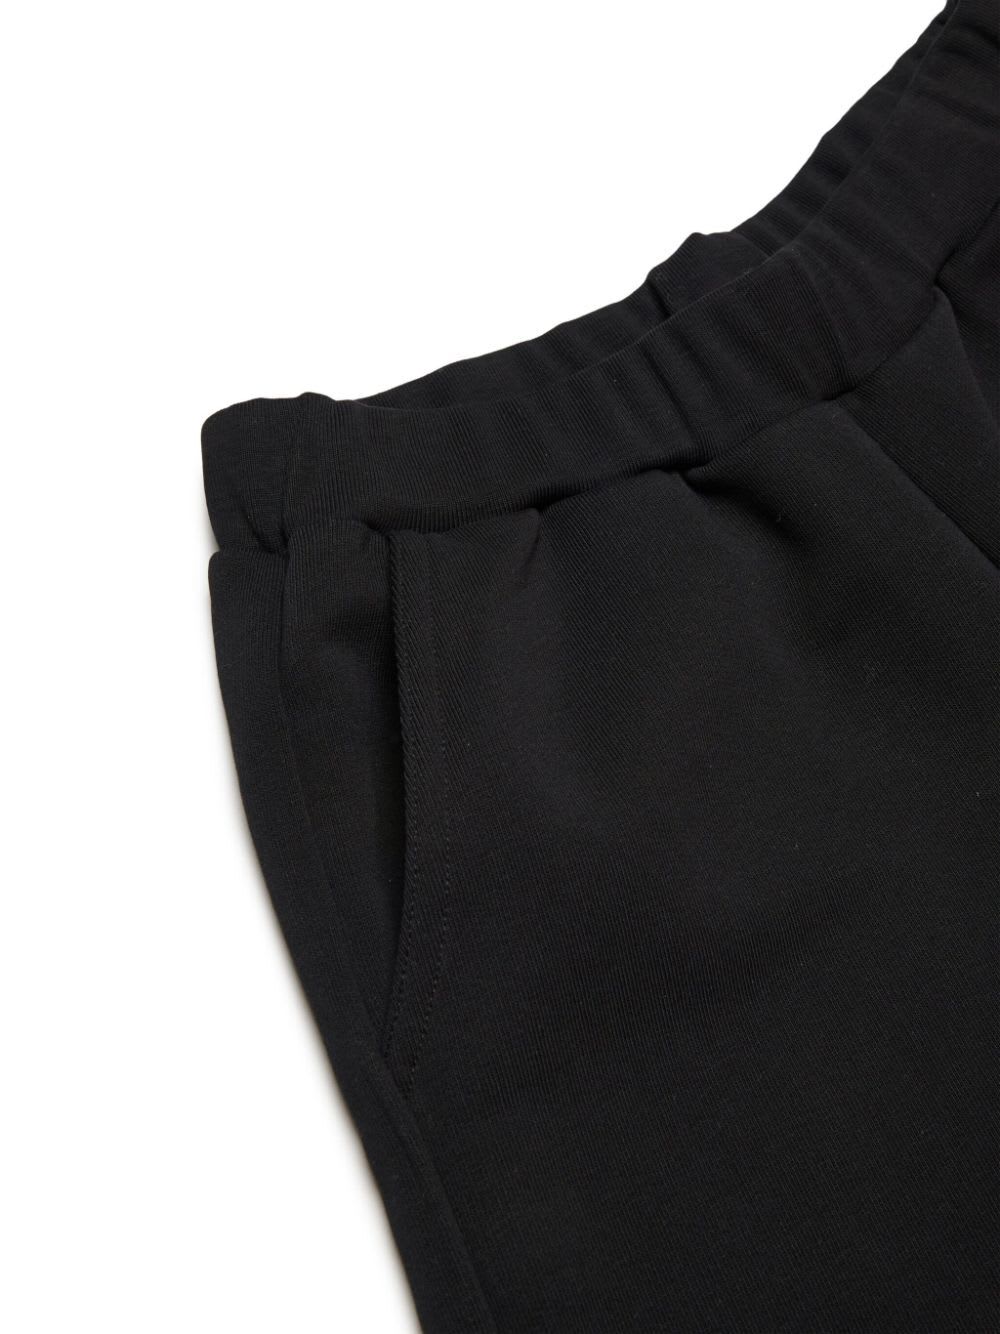 Shop Marni Mp66u Shorts In Black